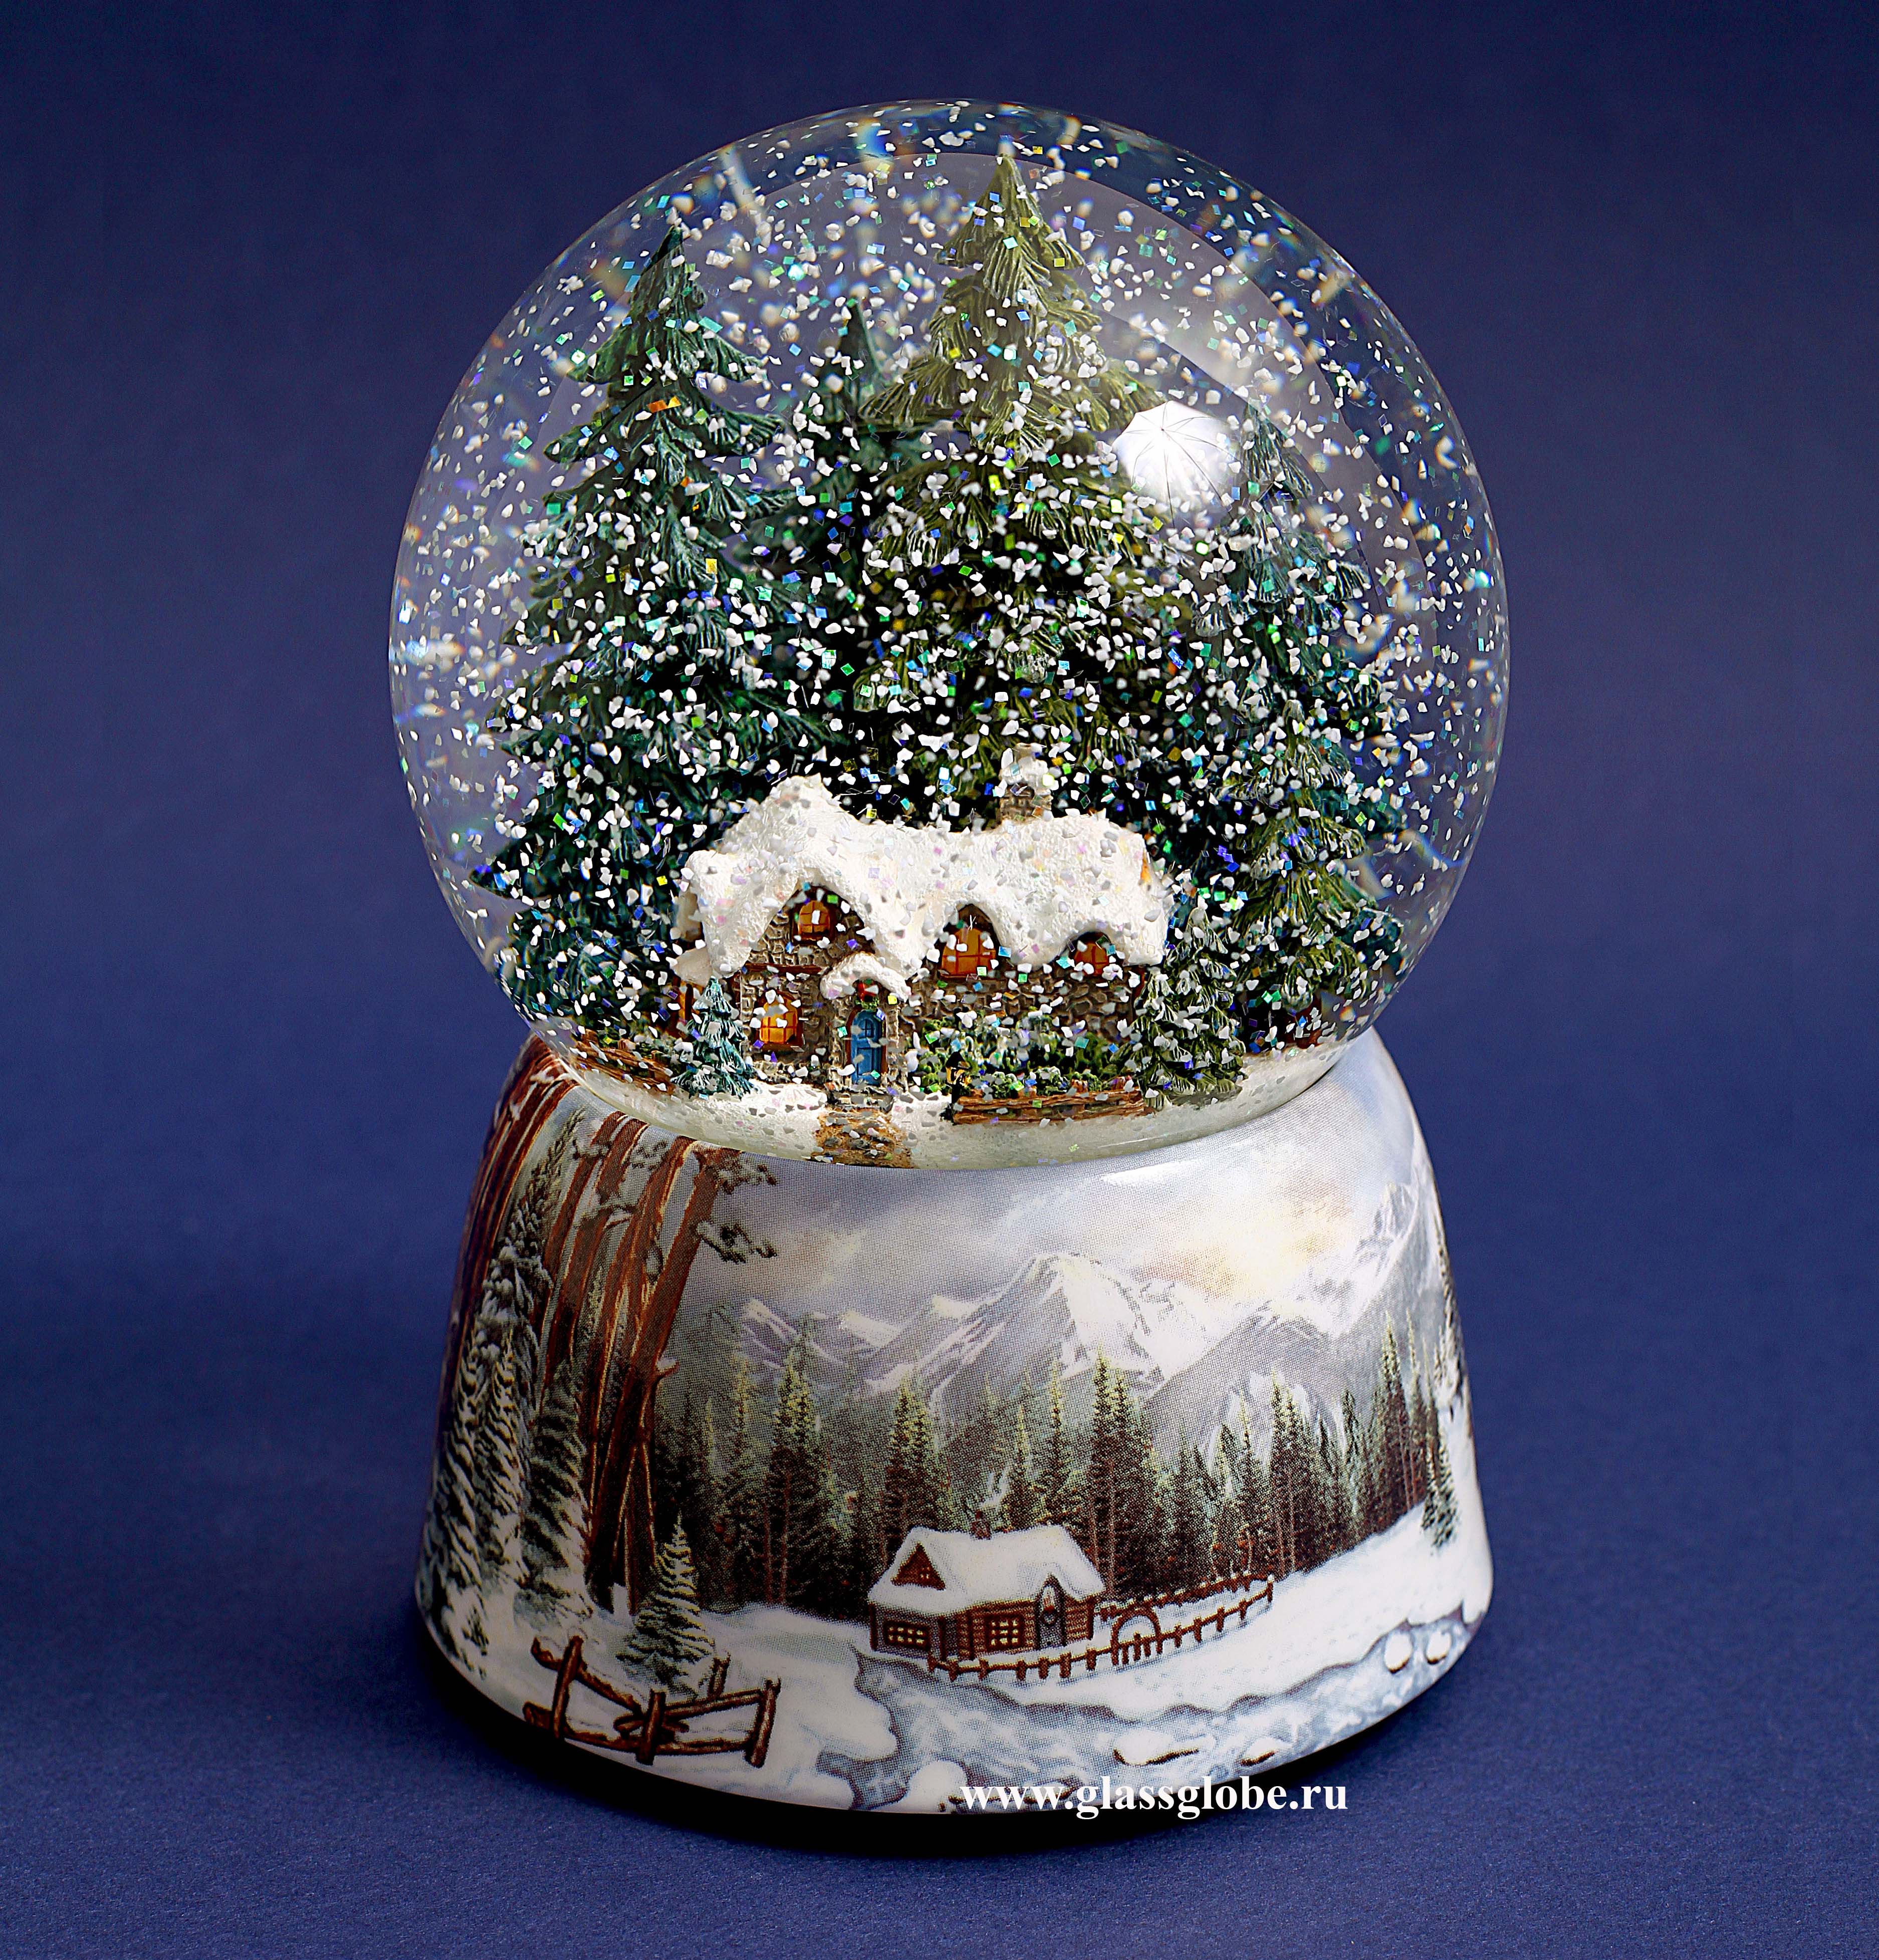 2 снежный шар. Снежный шар Glassglobe. Midland снежный шар. Снежный шар Джейкобстаун. Снежный шар Glassglobe "домик в лесу".